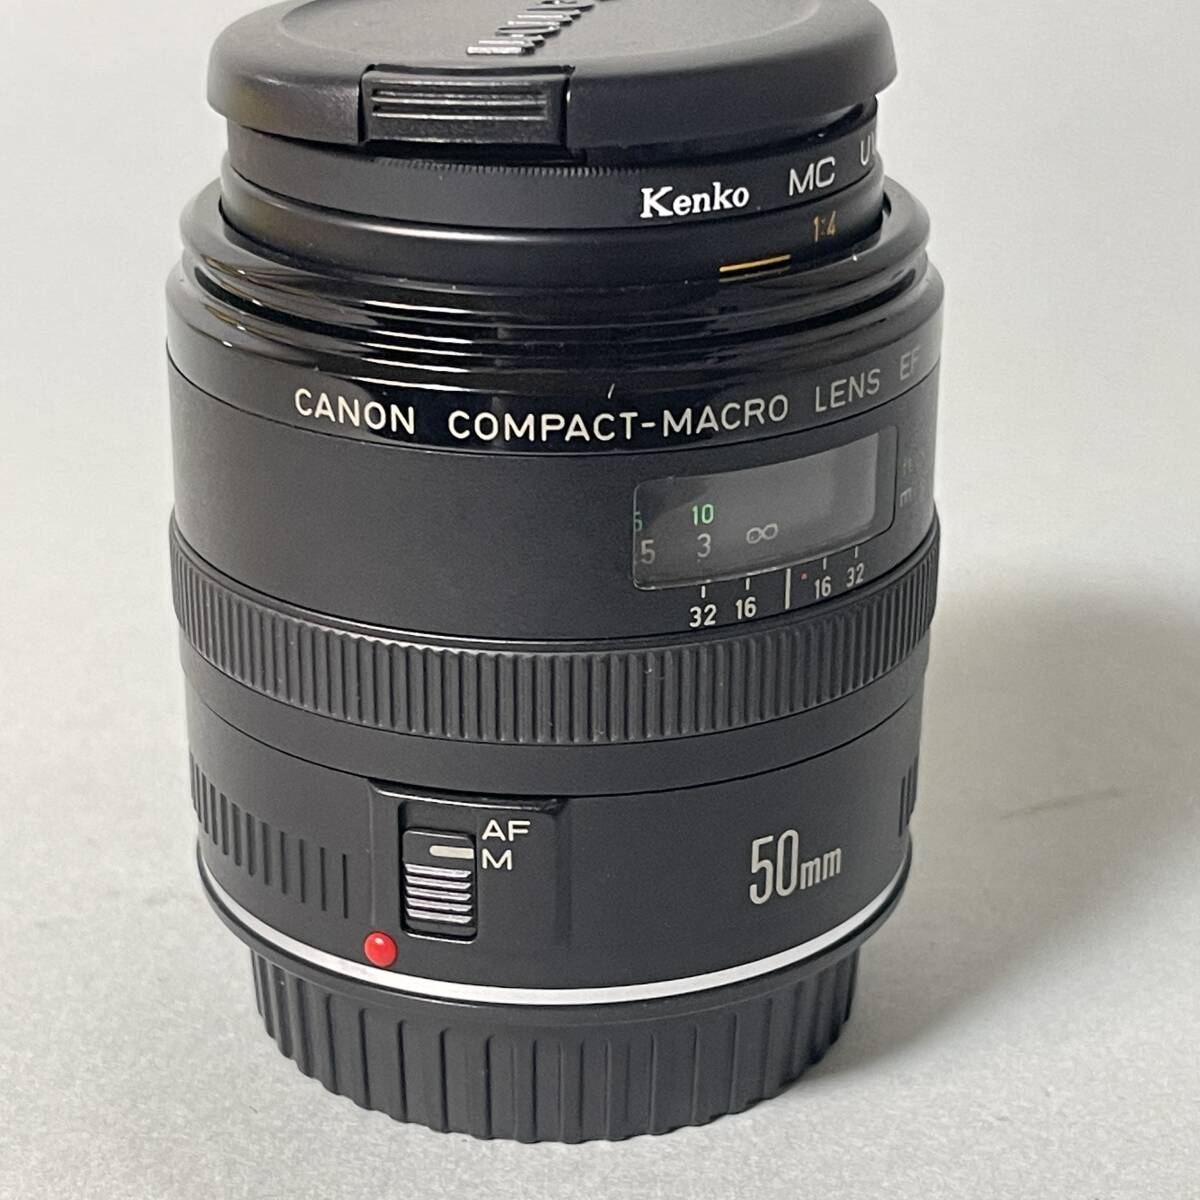 キャノン COMPACT MACRO LENS EF 56mm 1:2.5 CANON 一眼レフカメラ レンズ コンパクト マクロ B3_画像2